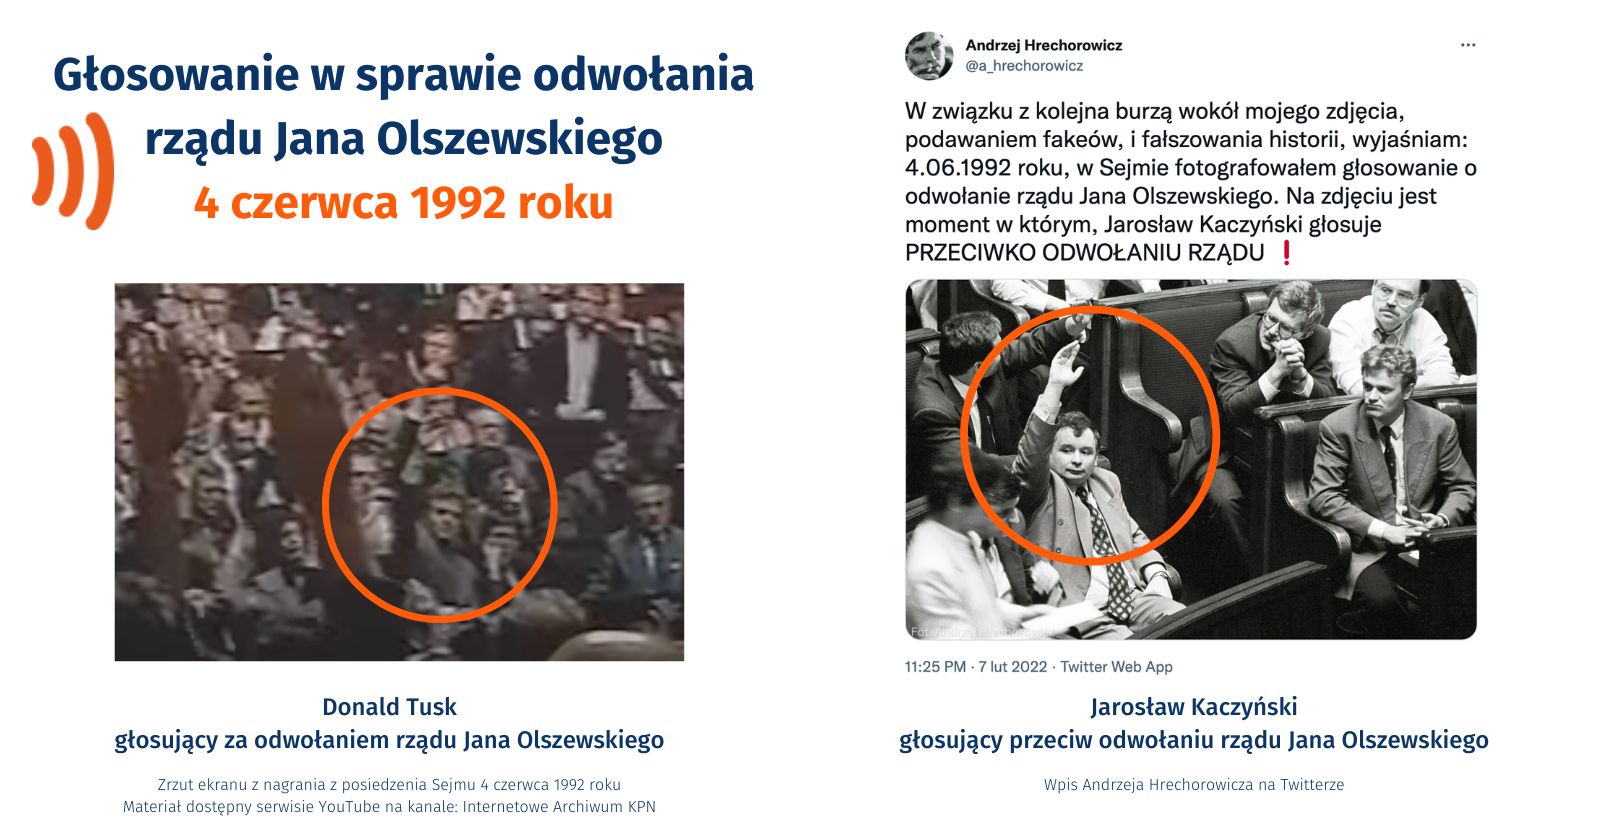 Grafika ukazująca Donalda Tuska głosujące za odwołaniem rządu Jana Olszewskiego i Jarosława Kaczyńskiego głosującego przeciw odwołaniu tego rządu.